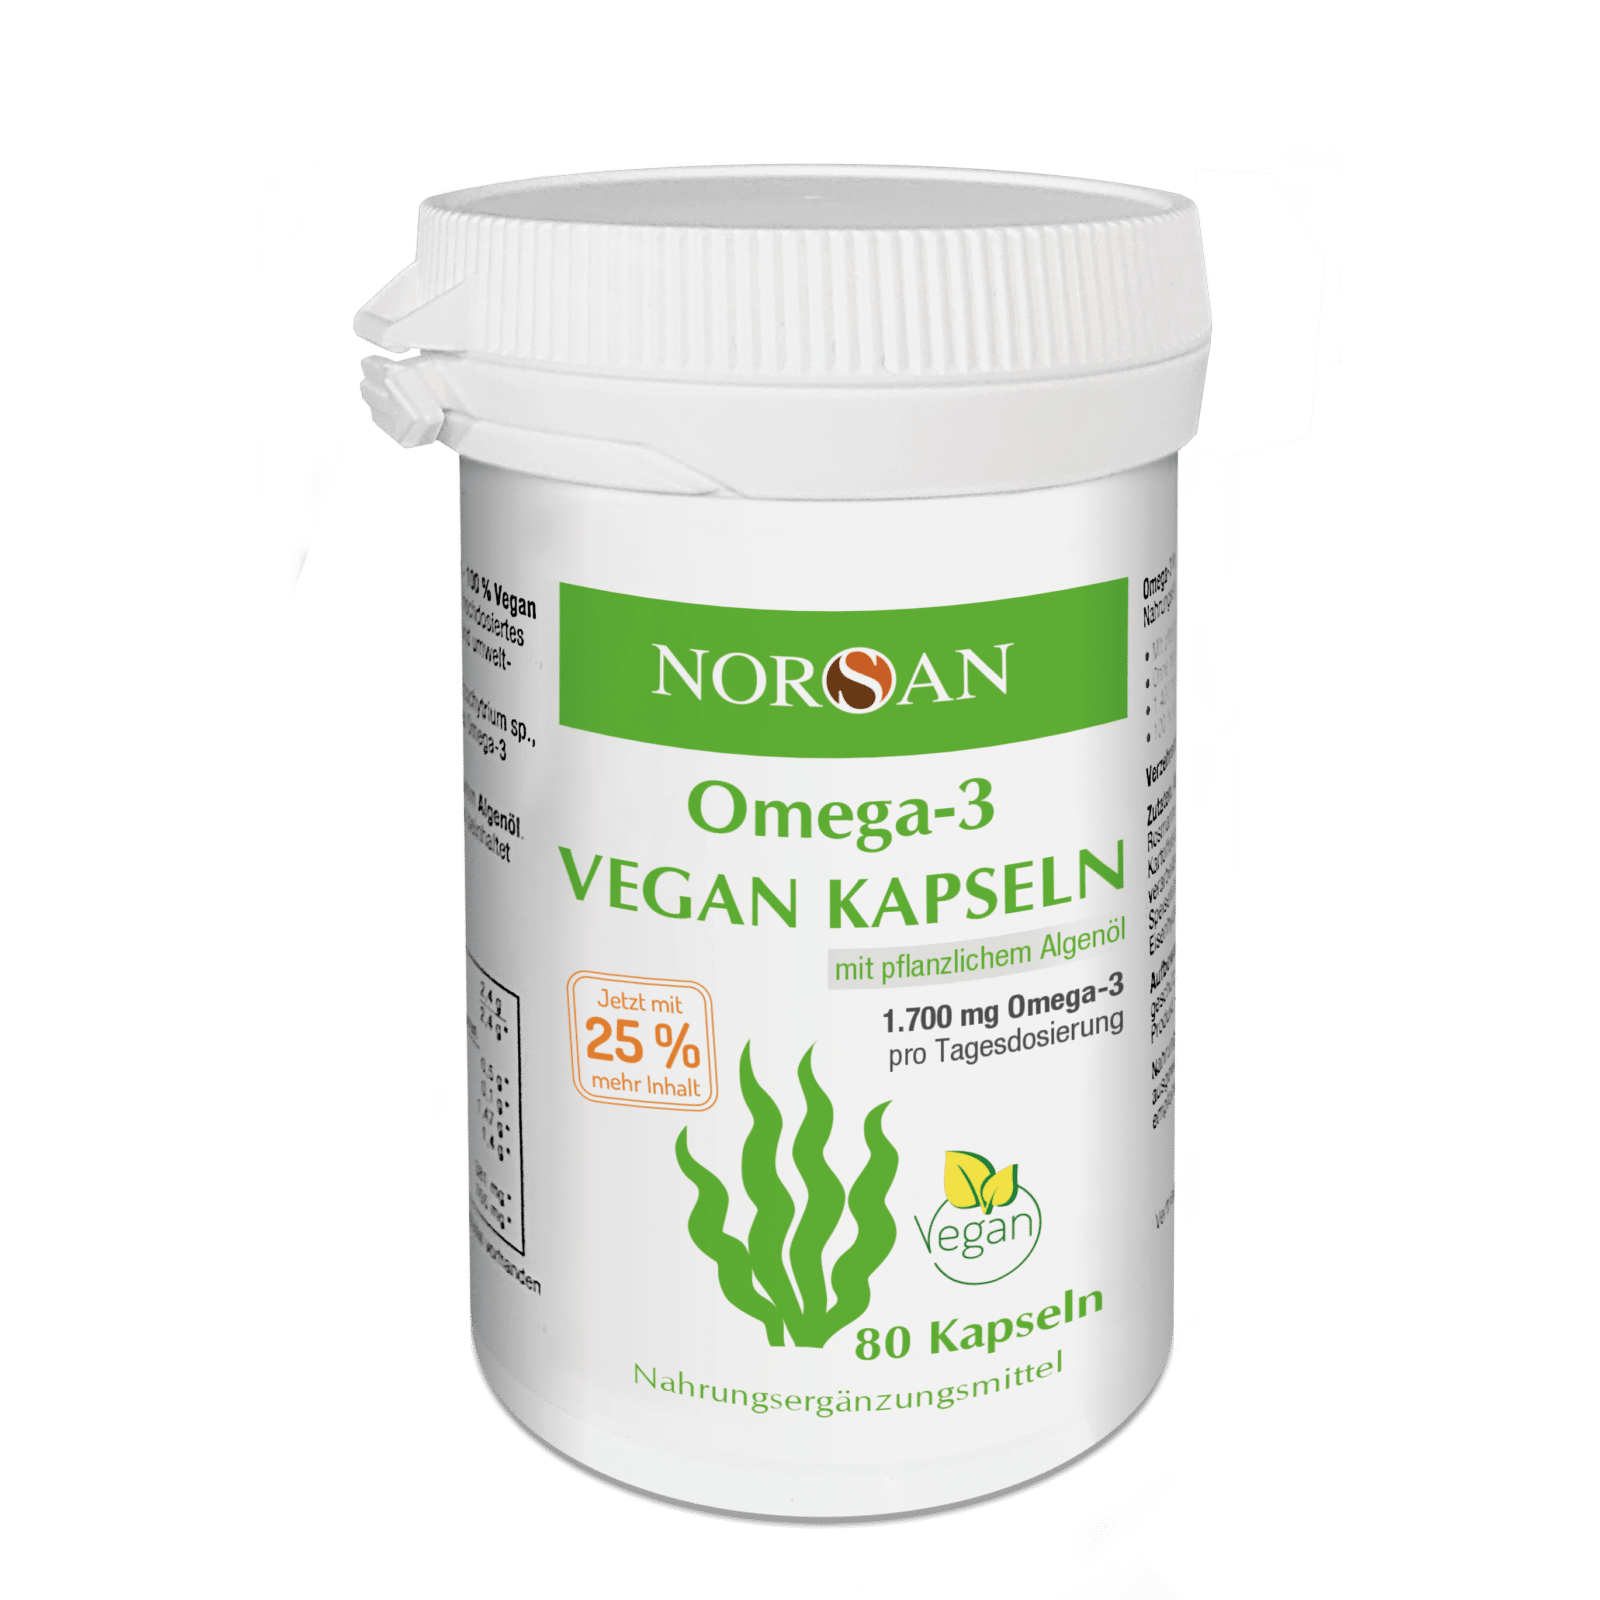 NORSAN "Omega-3 Vegan" - Омега-3 жирные кислоты 1700 мг из водорослевого масла, 80 капсул